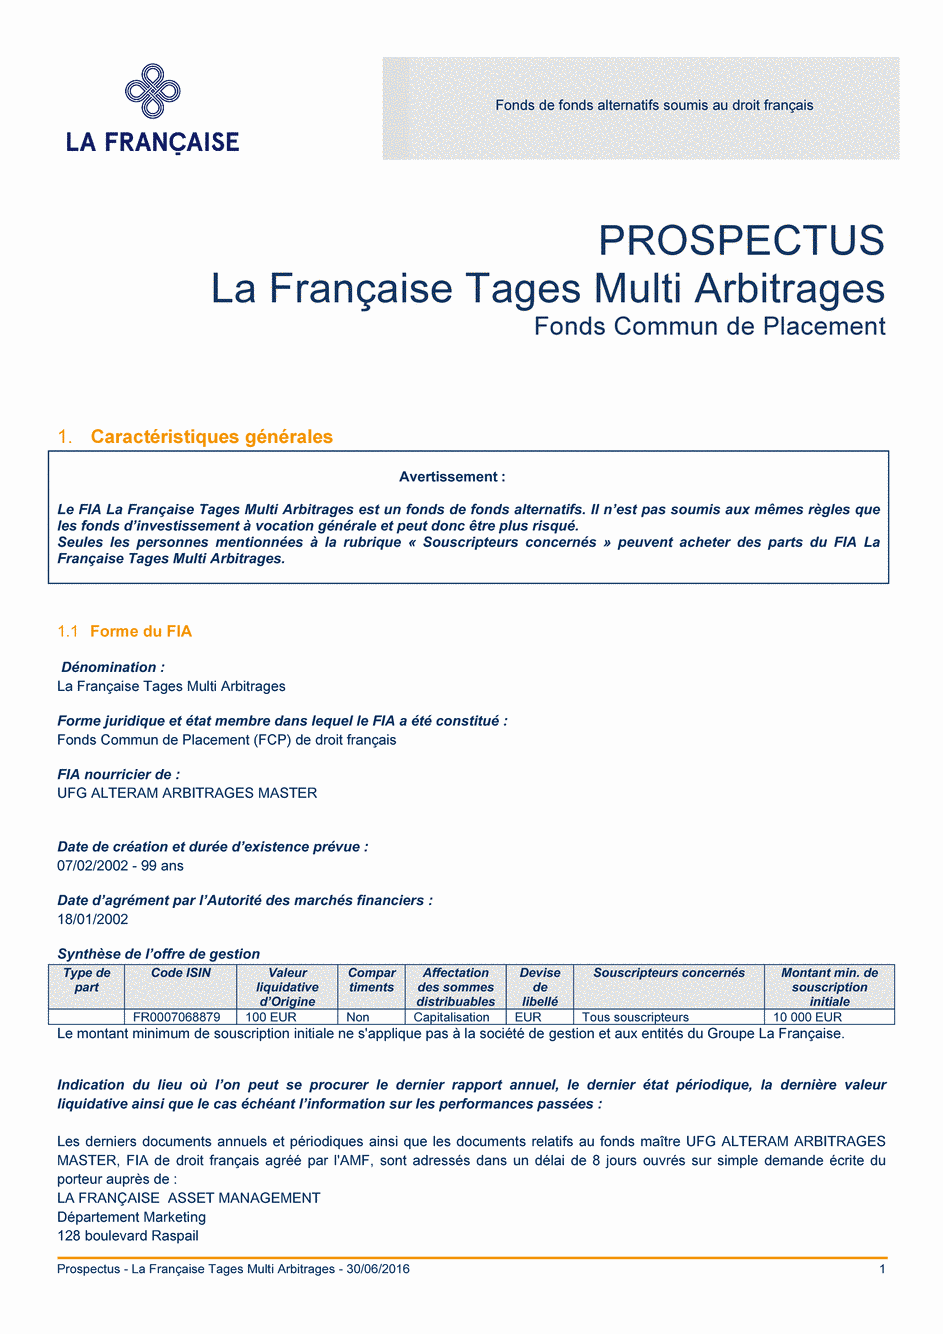 Prospectus La Française Tages Multi Arbitrages - 30/06/2016 - Français